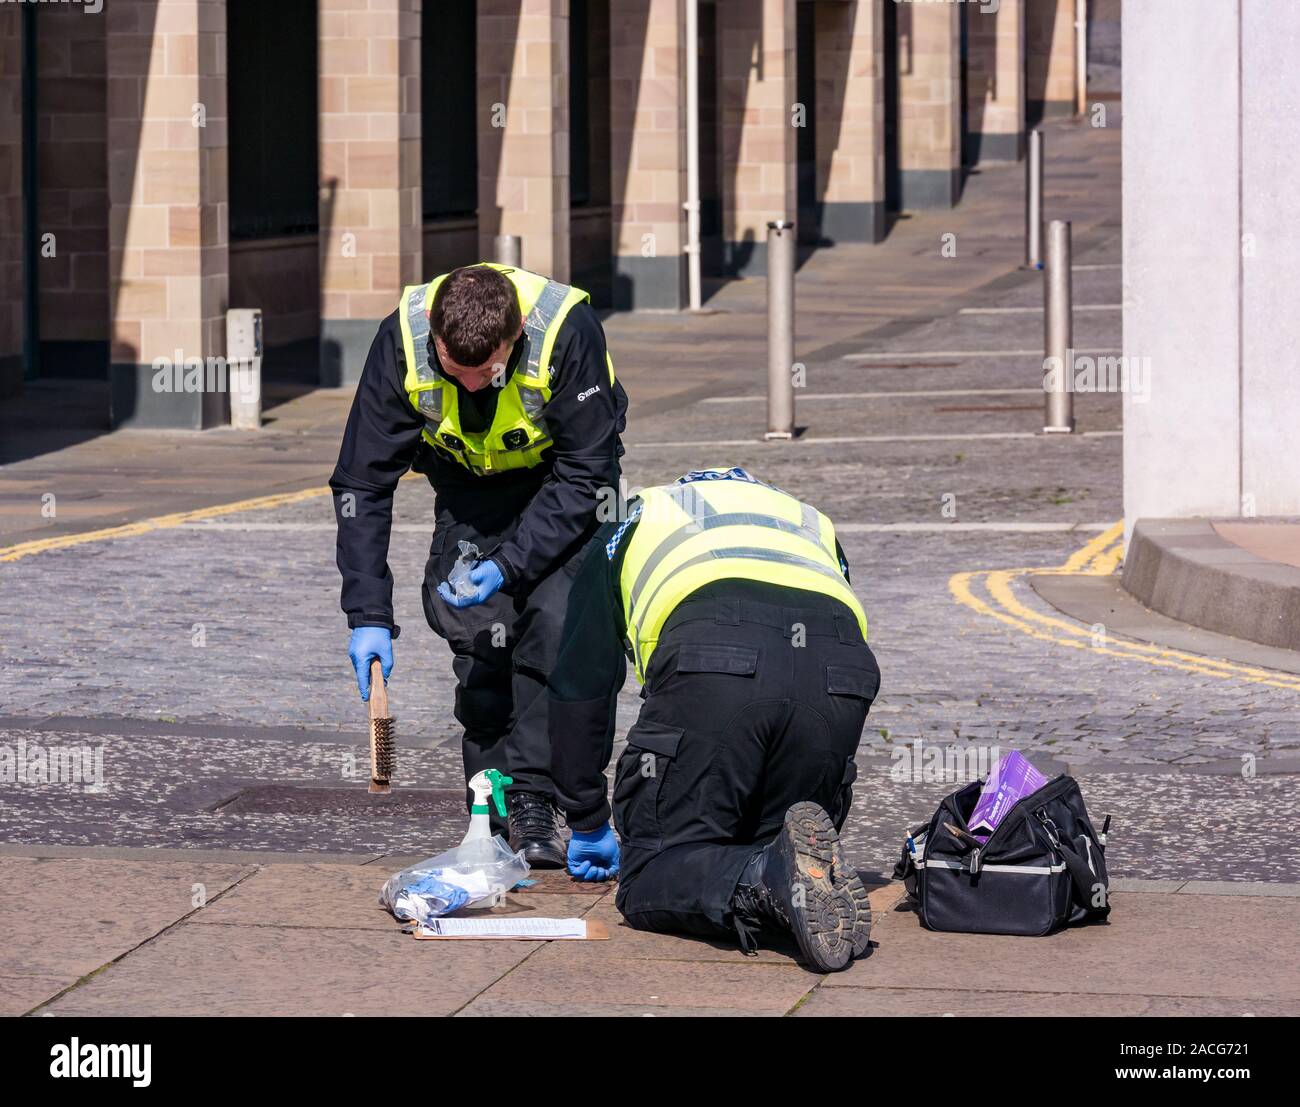 Contrôle de sécurité des policiers les drains, Holyrood Road près de parlement de l'Écosse, Édimbourg, Écosse, Royaume-Uni Banque D'Images